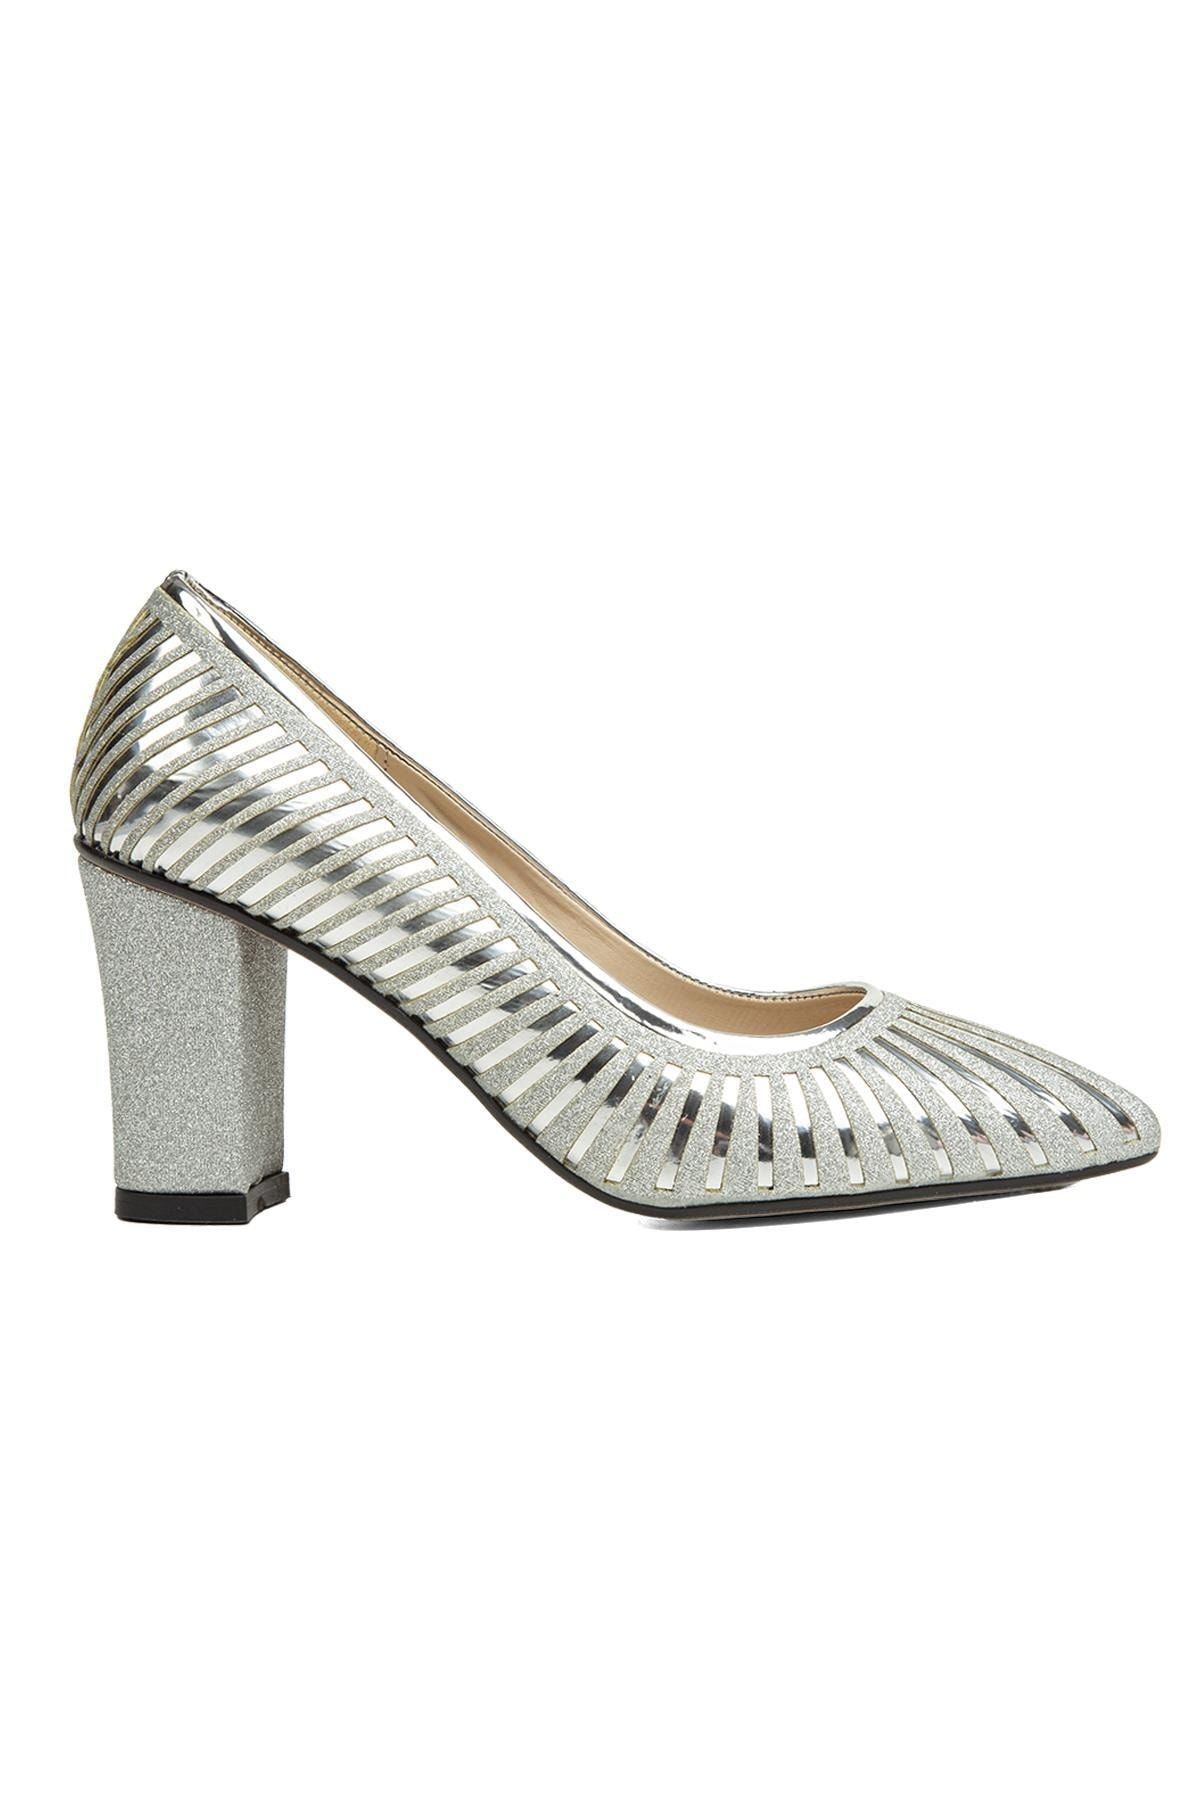 Pierre Cardin ® | Pc-52037-3478 Gumus - Kadın Topuklu Ayakkabı